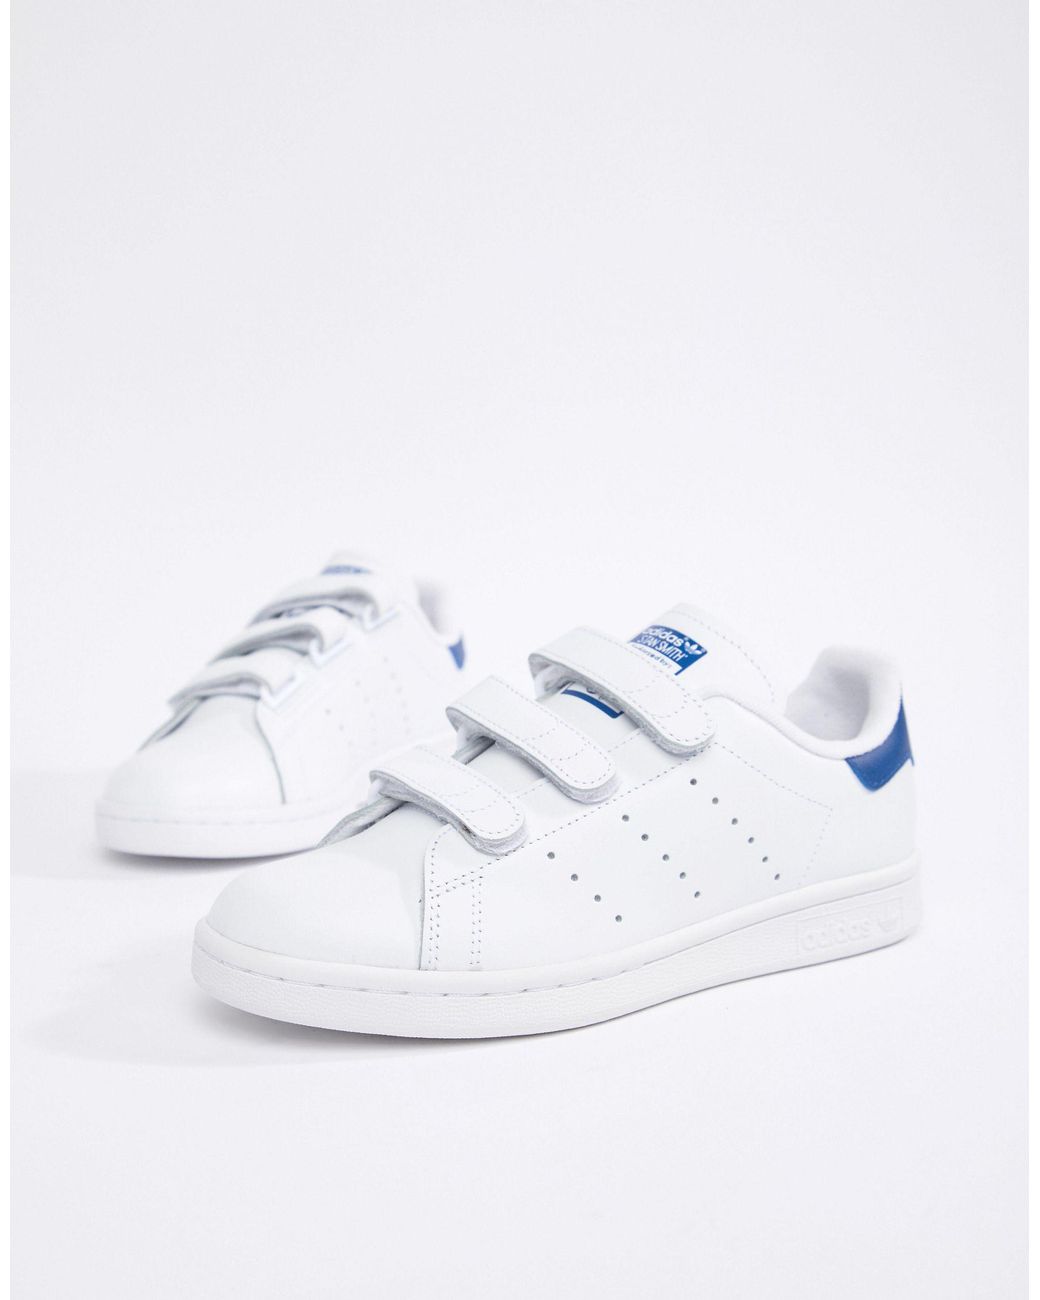 Ik heb een contract gemaakt Blootstellen Subsidie adidas Originals Stan Smith - Sneakers Met Klittenband in het Wit | Lyst NL